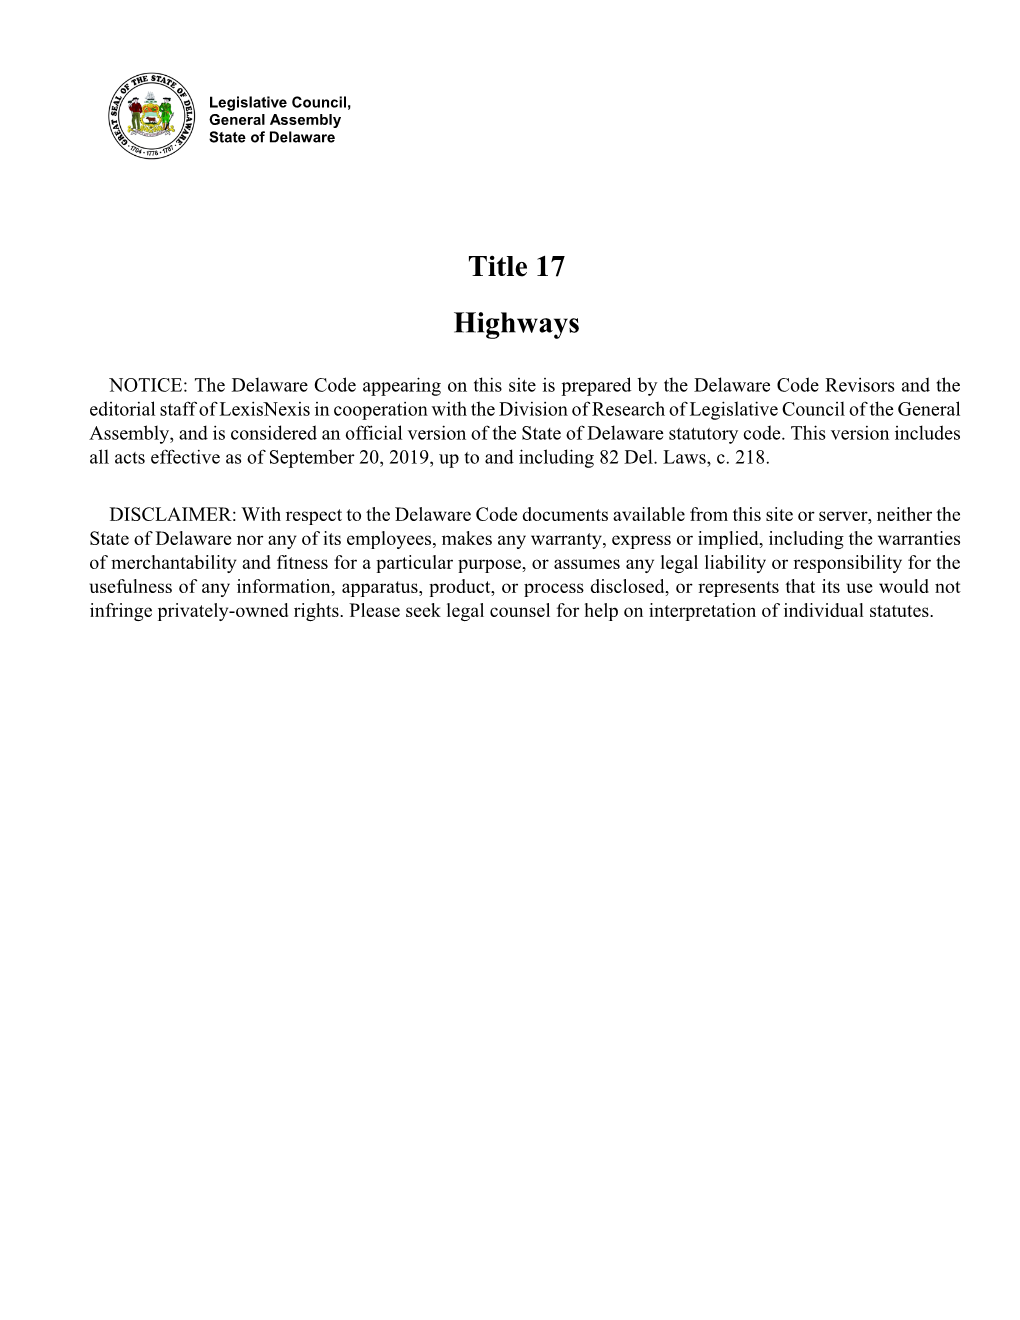 Title 17 Highways